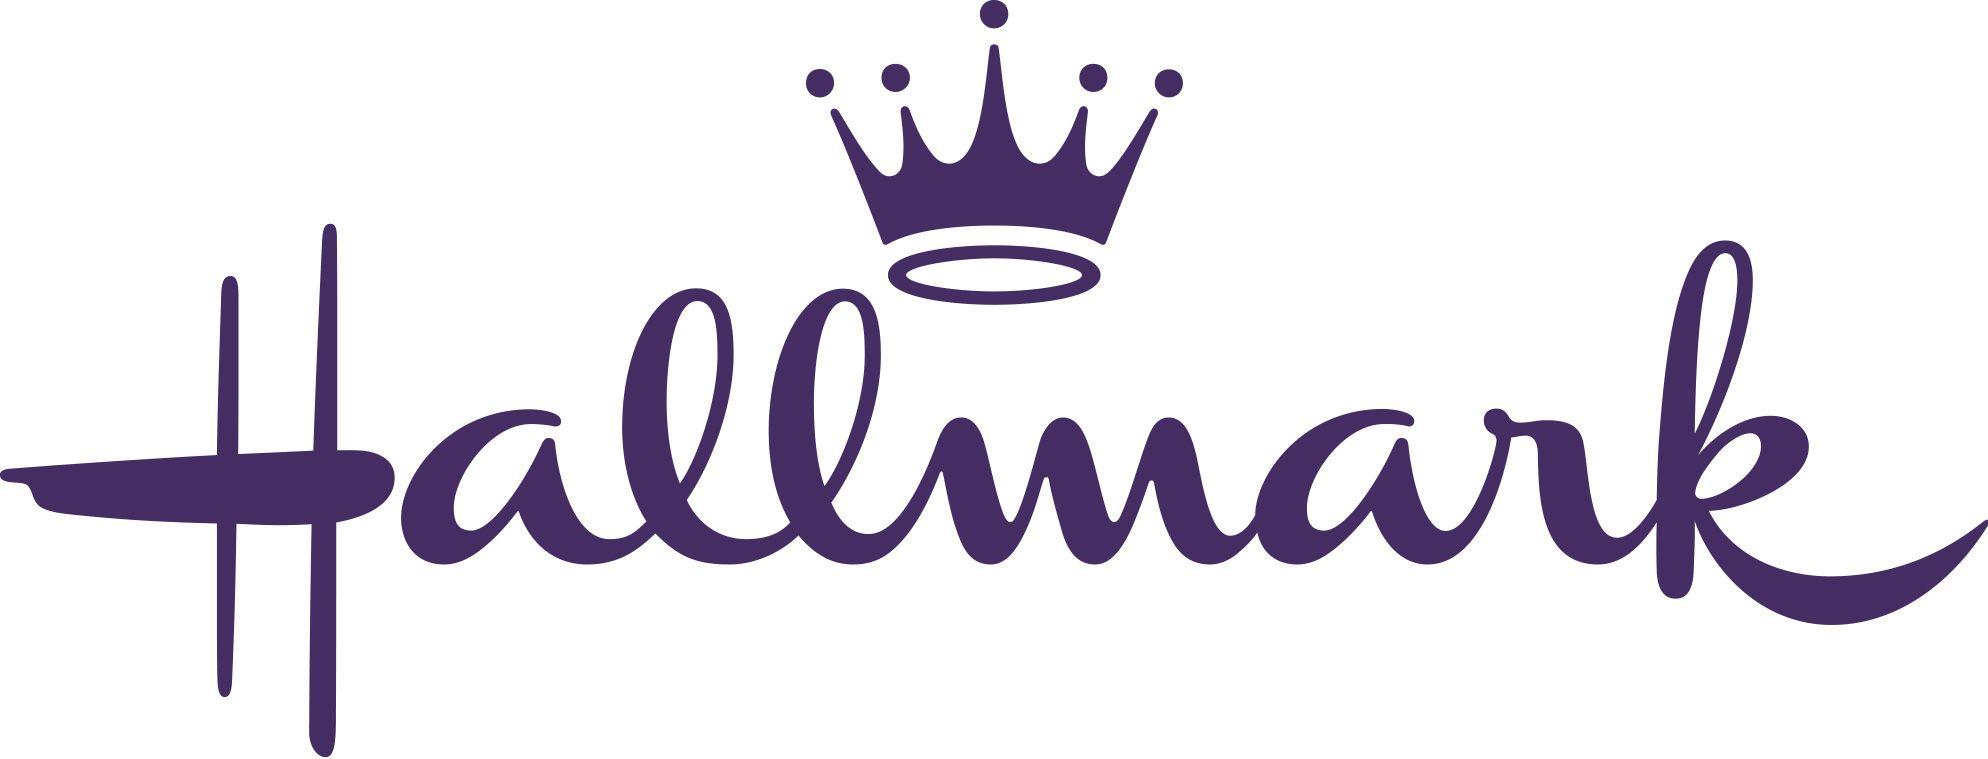 Hallmark Gold Crown Logo - Home | Hallmark Corporate Information